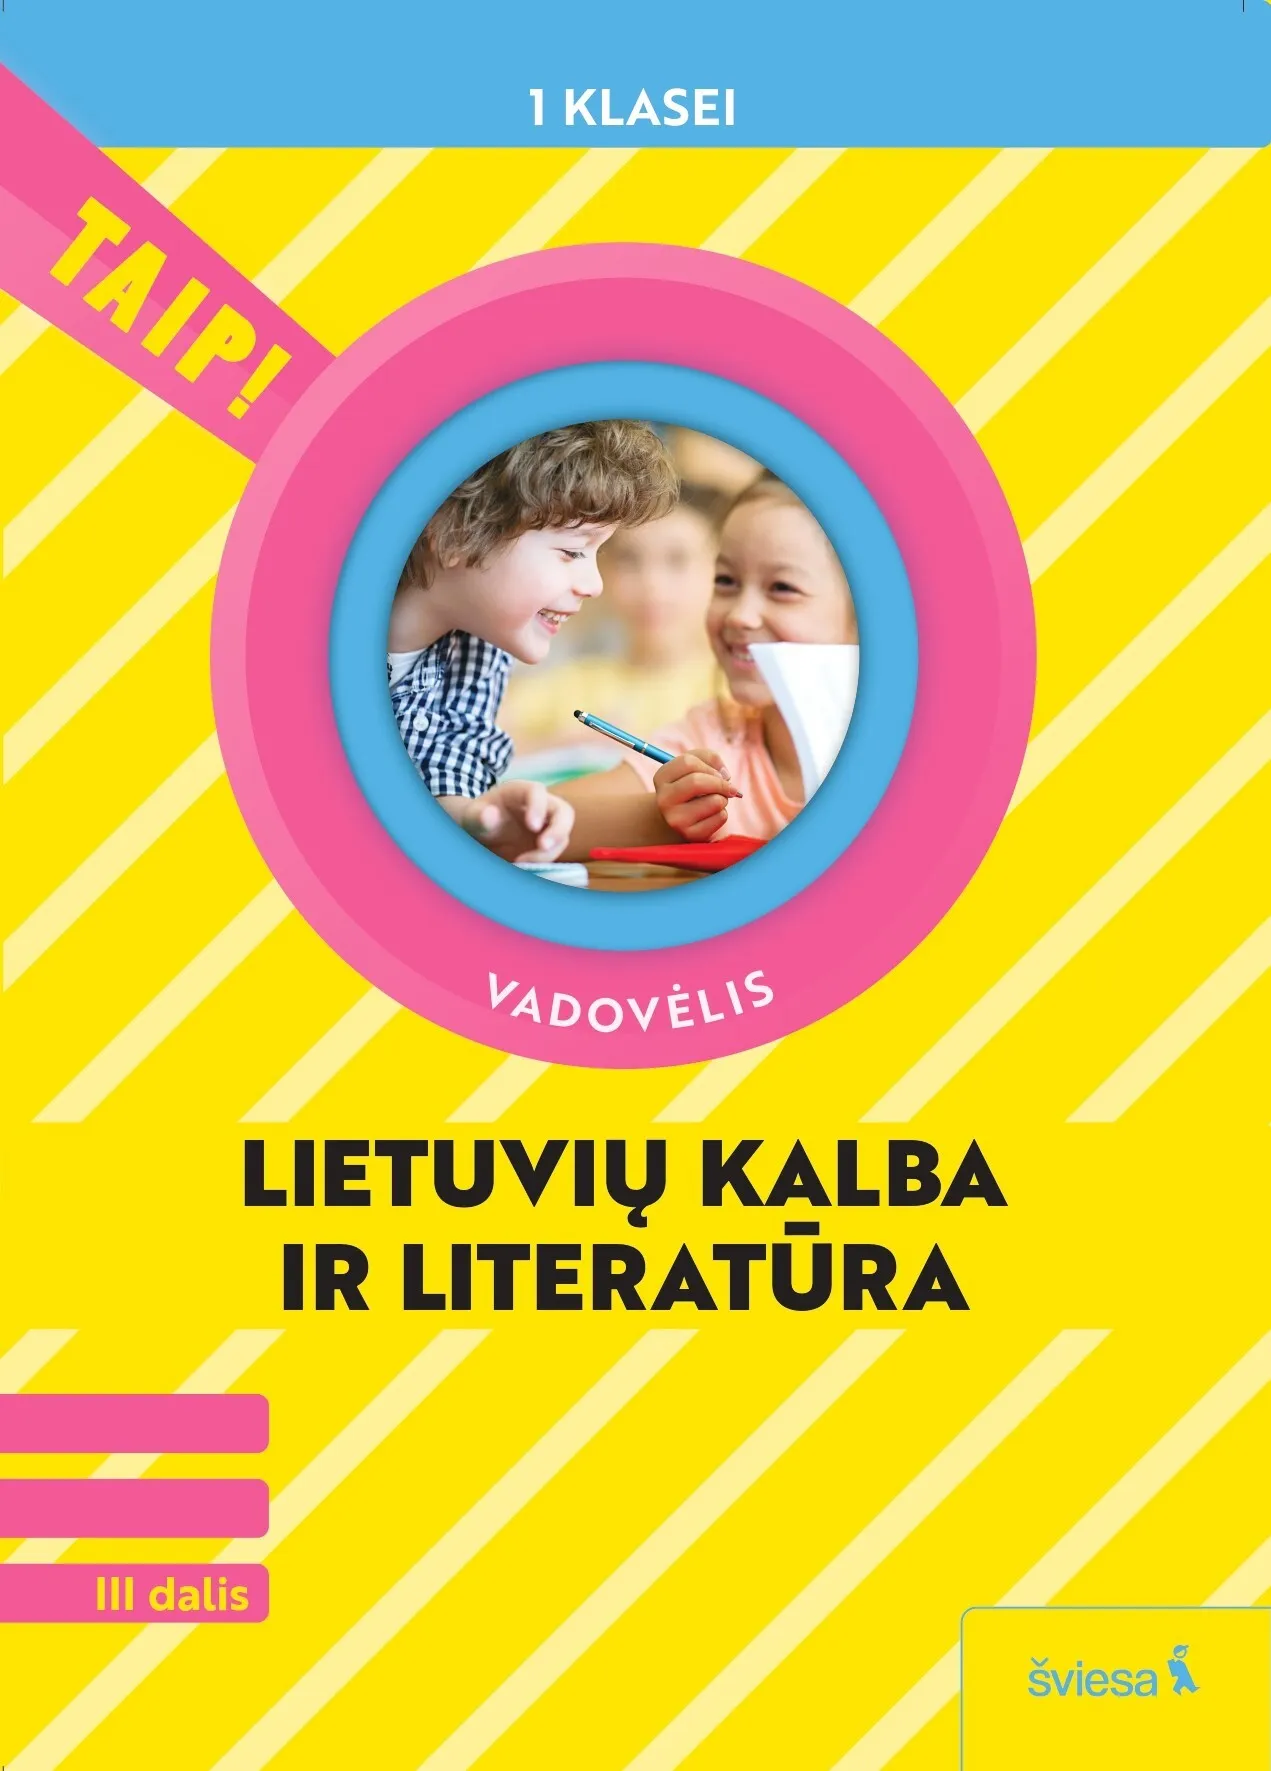 Lietuvių kalba ir literatūra. Vadovėlis 1 klasei, 3 dalis (Taip!)